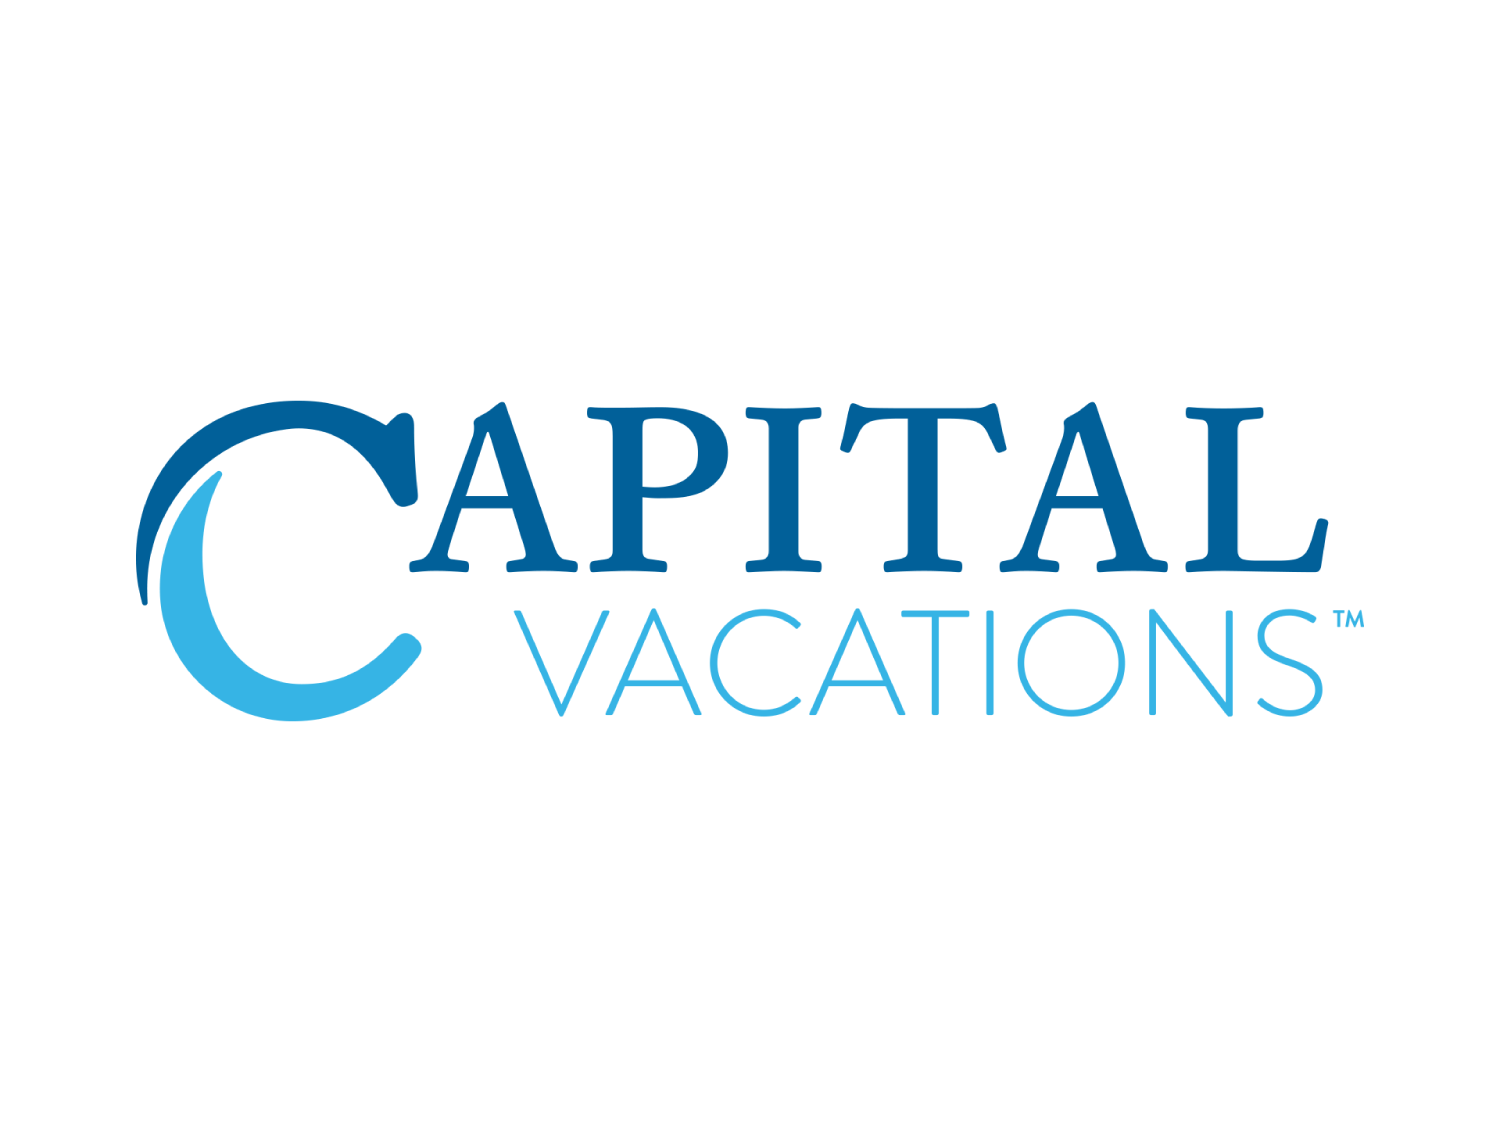 Capital Vacations (Copy)